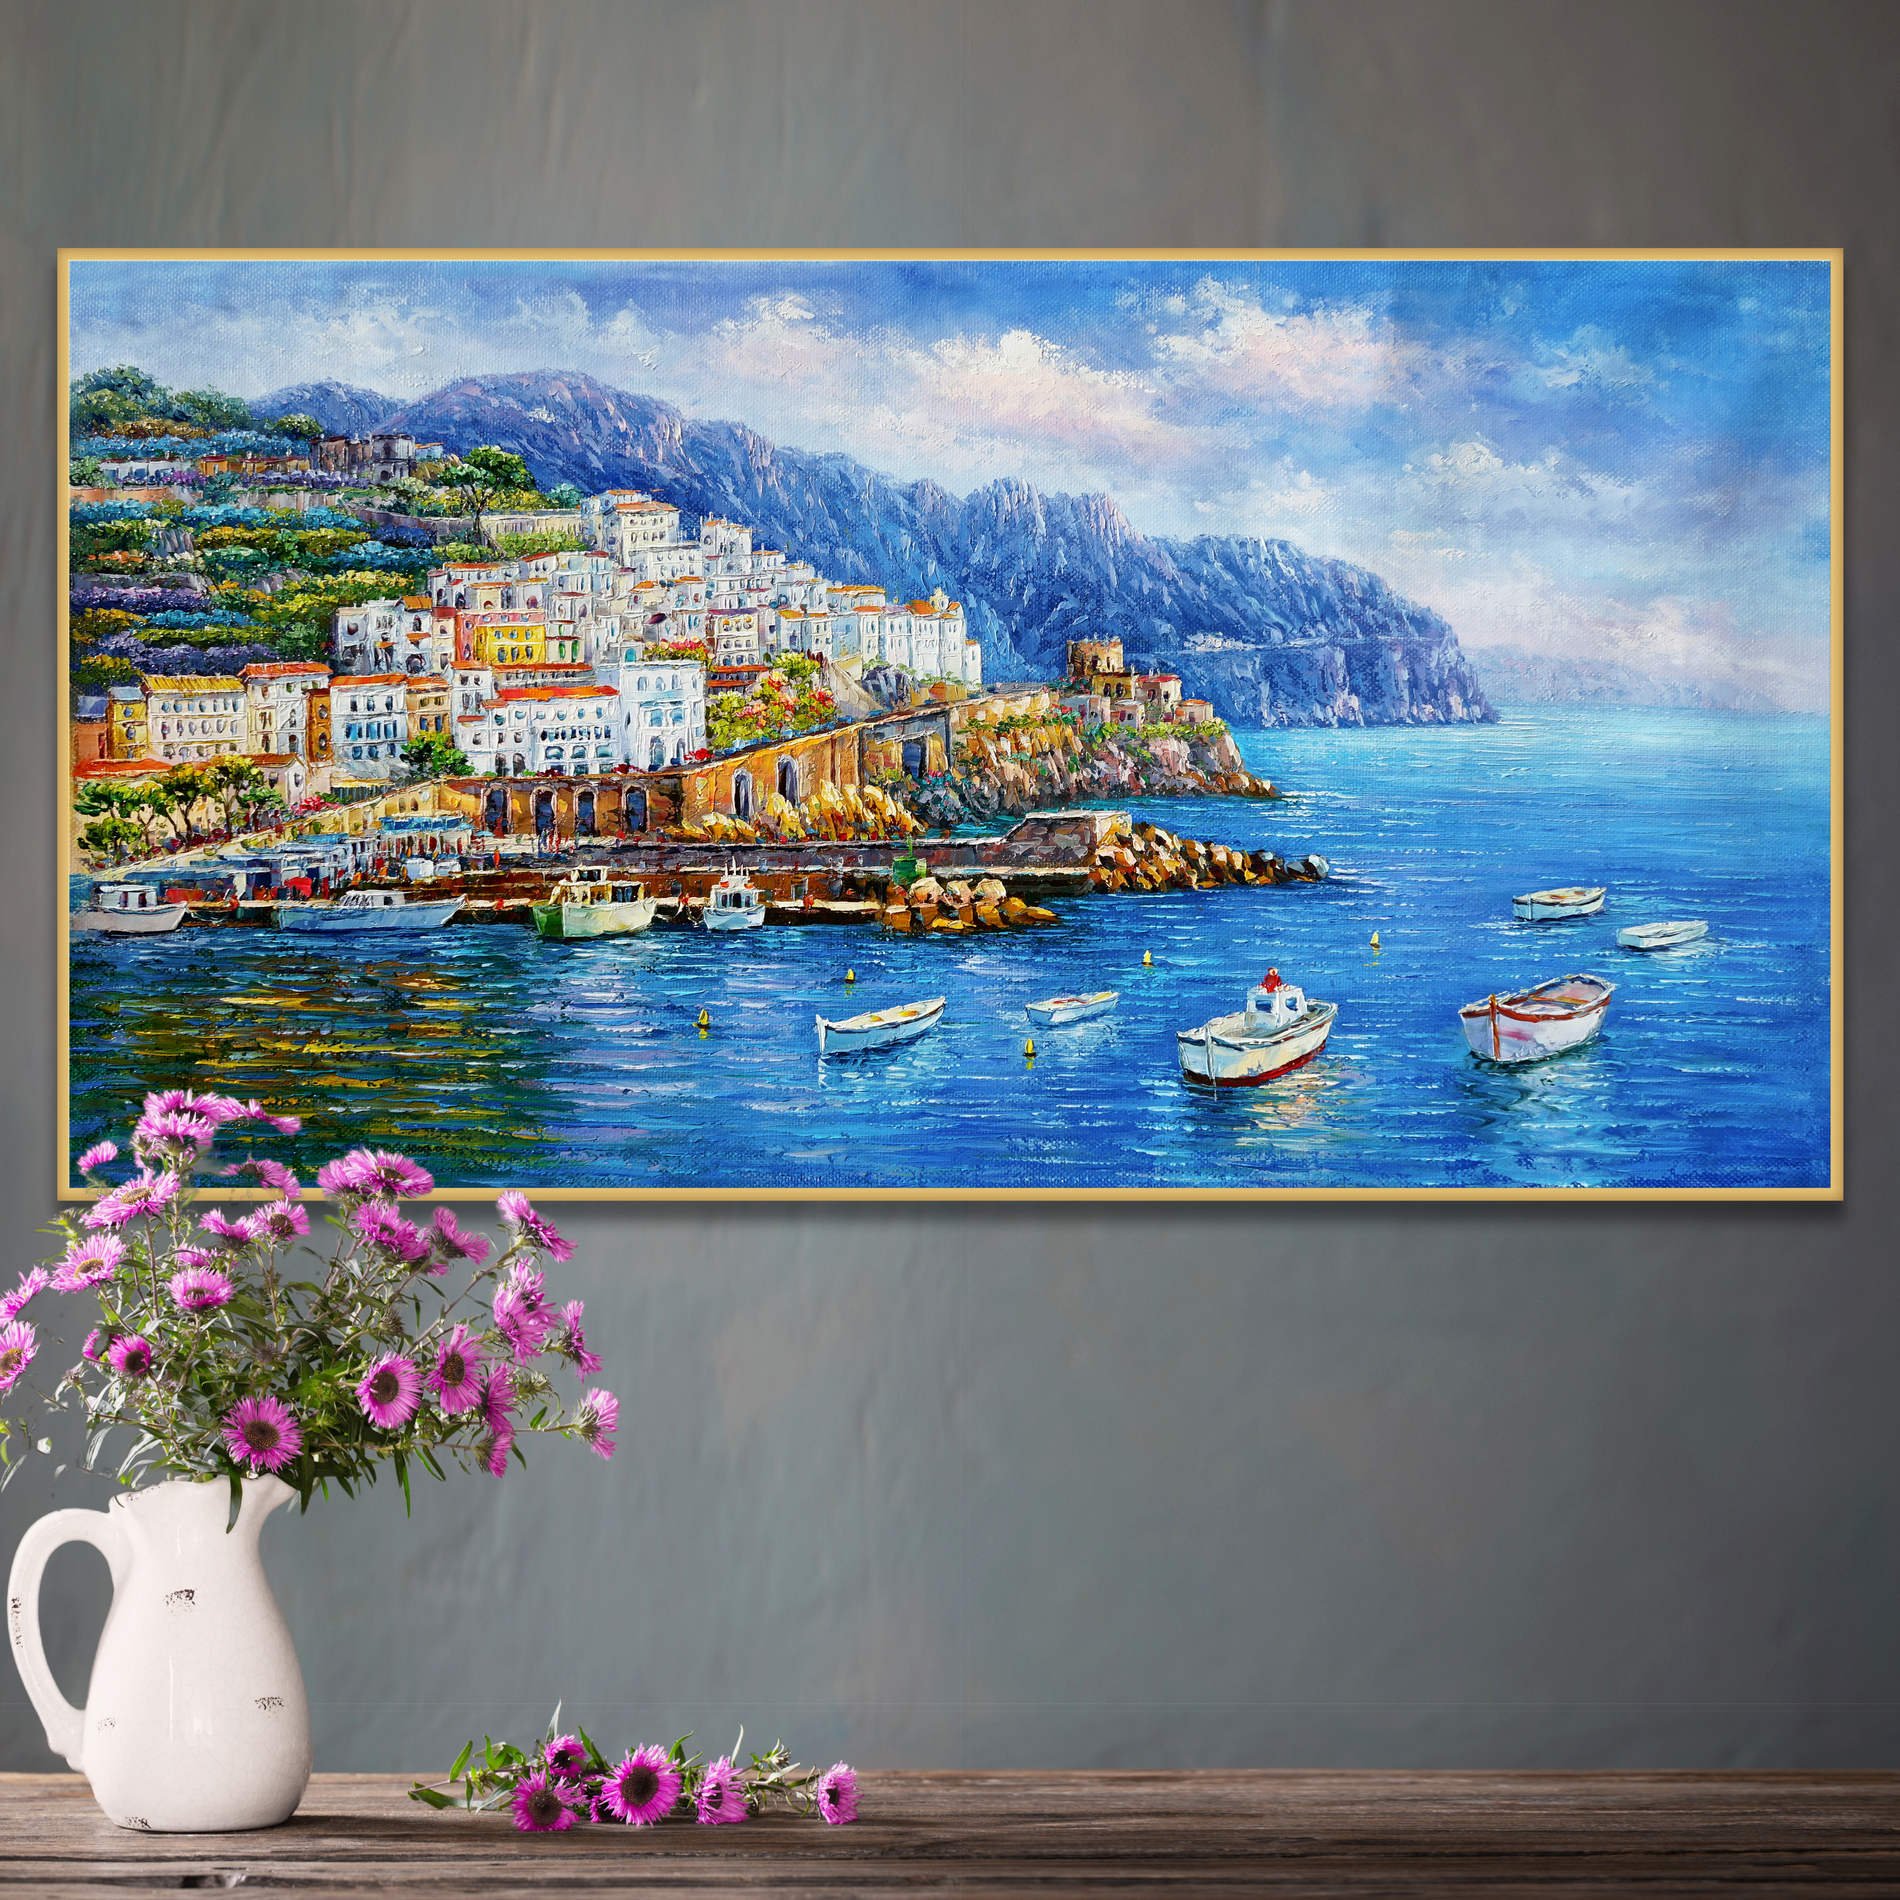 Dipinto del pittoresco borgo di Amalfi con le sue case arroccate